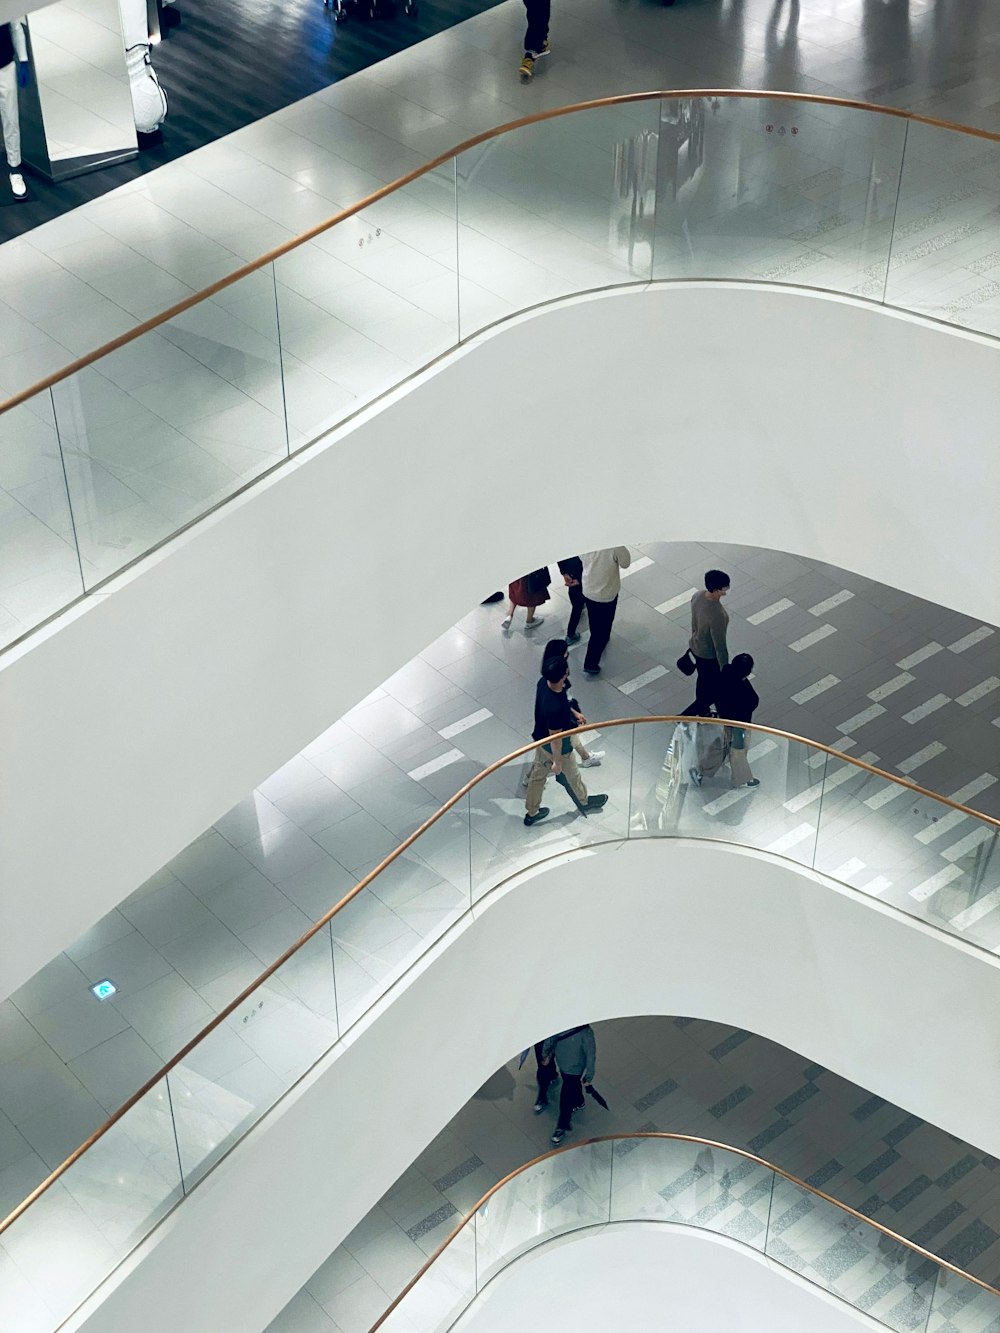 Un grupo de personas bajando unas escaleras